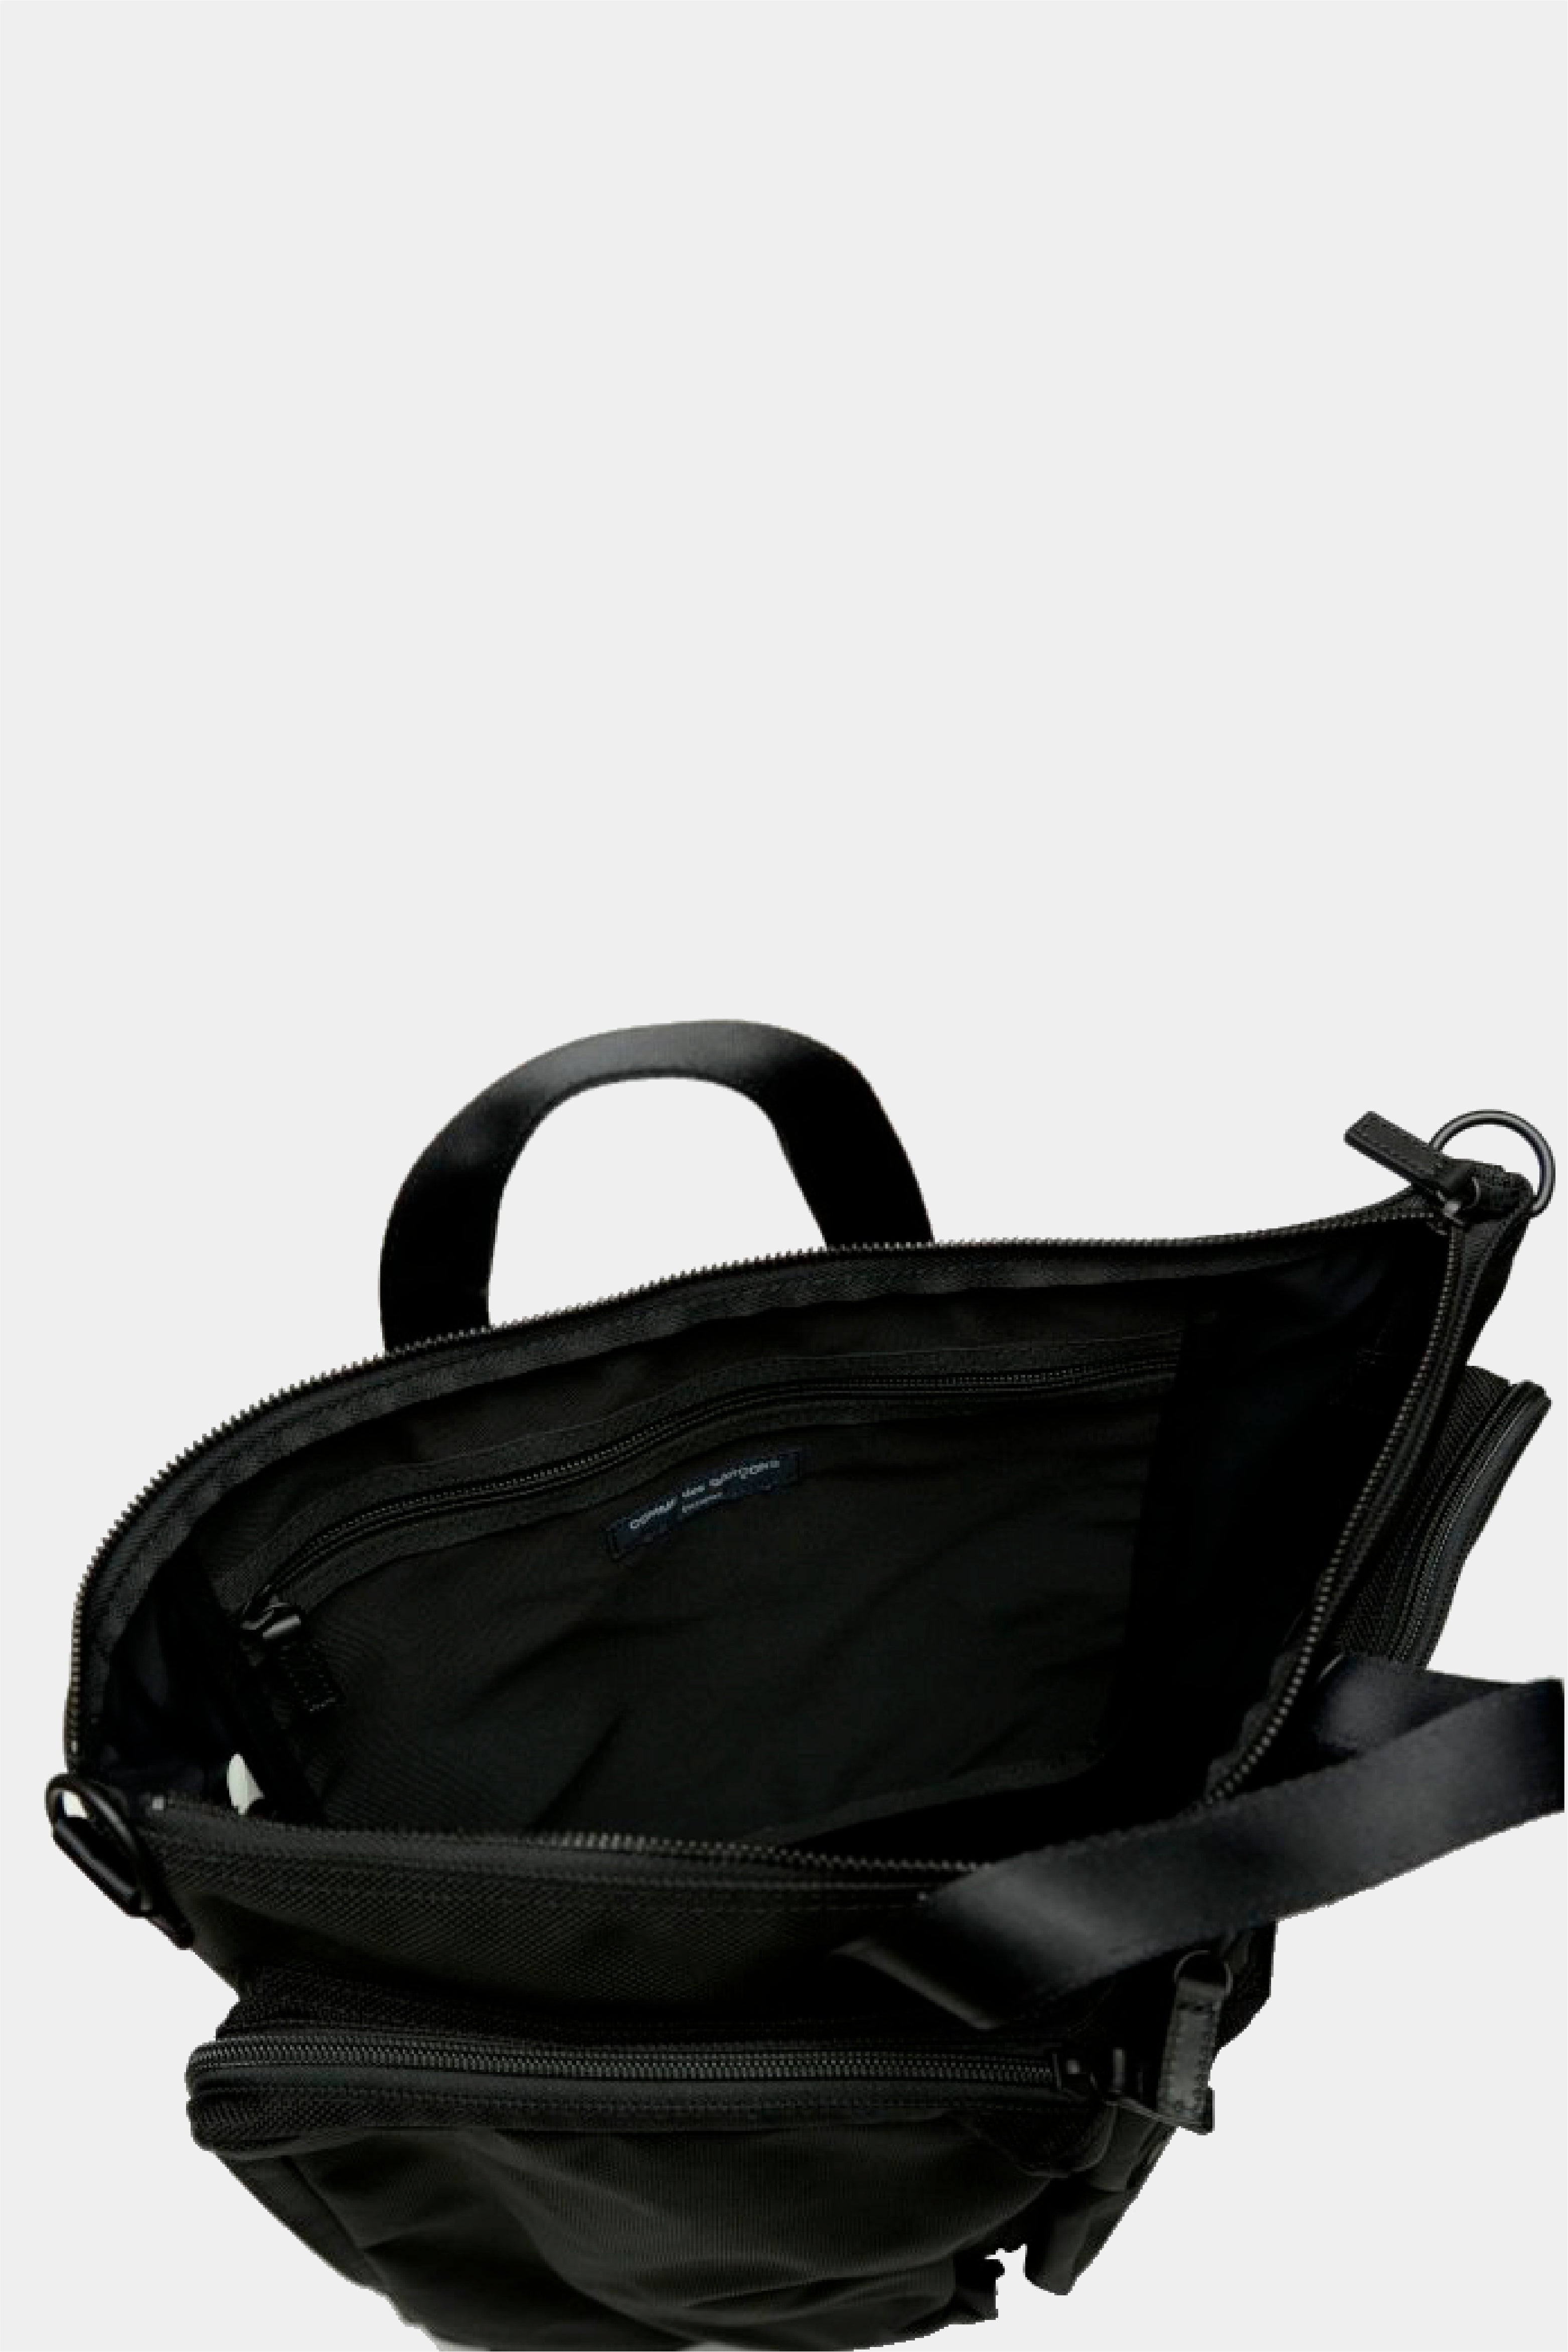 Selectshop FRAME - COMME DES GARÇONS HOMME Bag All-accessories Dubai